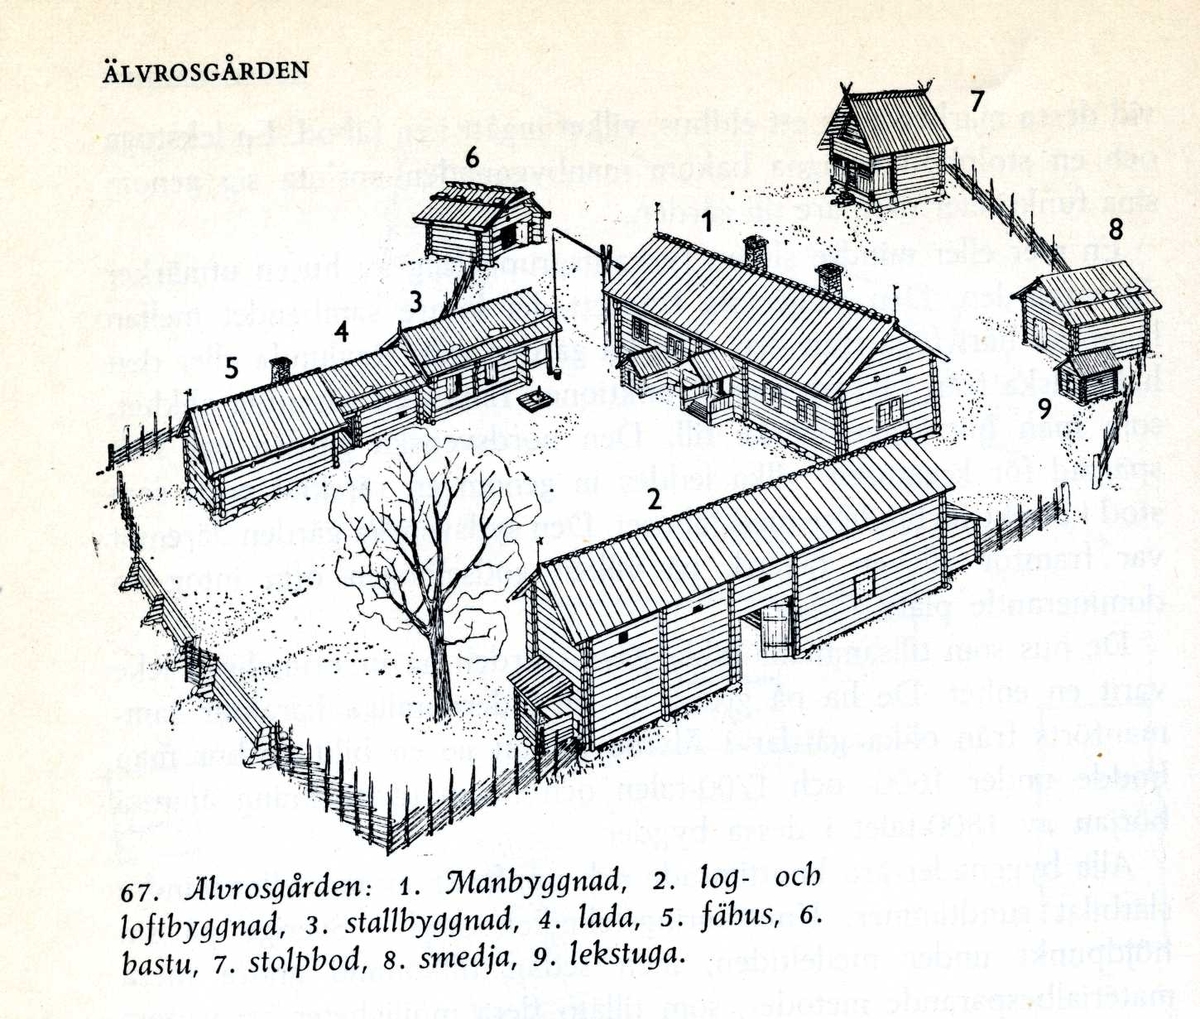 Älvrosgården skapades på Skansen under åren 1915-1916. Byggnaderna kommer från Älvros socken i sydöstra Härjedalen och är sammanförda med utgångspunkt i sin ålderdomliga karaktär. De har samlats in för att på Skansen ge en bild av hur man bodde i Härjedalen under 1600-, 1700- och i viss utsträckning ännu i början på 1800-talet. Älvrosgården består av ett boningshus, samt två uthuslängor. I fähuslängan ryms fähus, lider, hölada, stall med foderrum samt avträde. Uthuslängan rymmer sliplider, loftbod, portlider, loge och vedlider. Framför stallet ligger gårdsbrunnen med sin stora brunnsvipp. Utanför mangården ligger smedja, bastu, stolpbod, lekstuga. Ytterligare en bit bort finns utmarksbebyggelse i form av ett eldhus och två hölador.